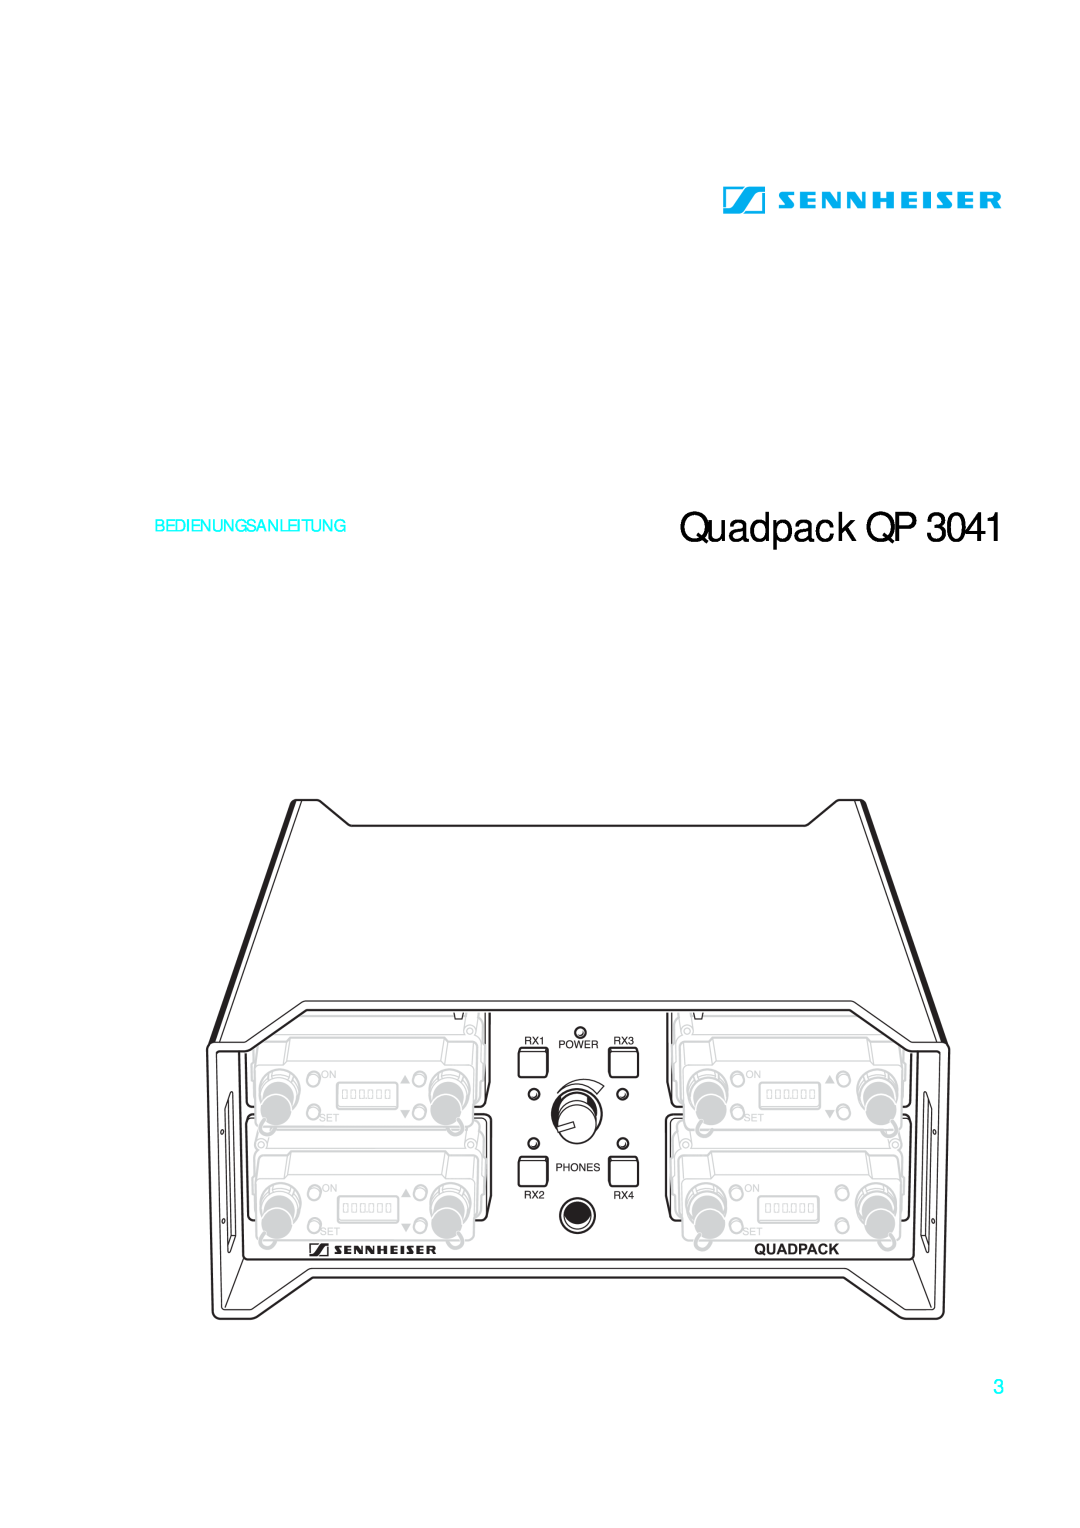 Sennheiser qp 3041 instruction manual Quadpack QP, Bedienungsanleitung 